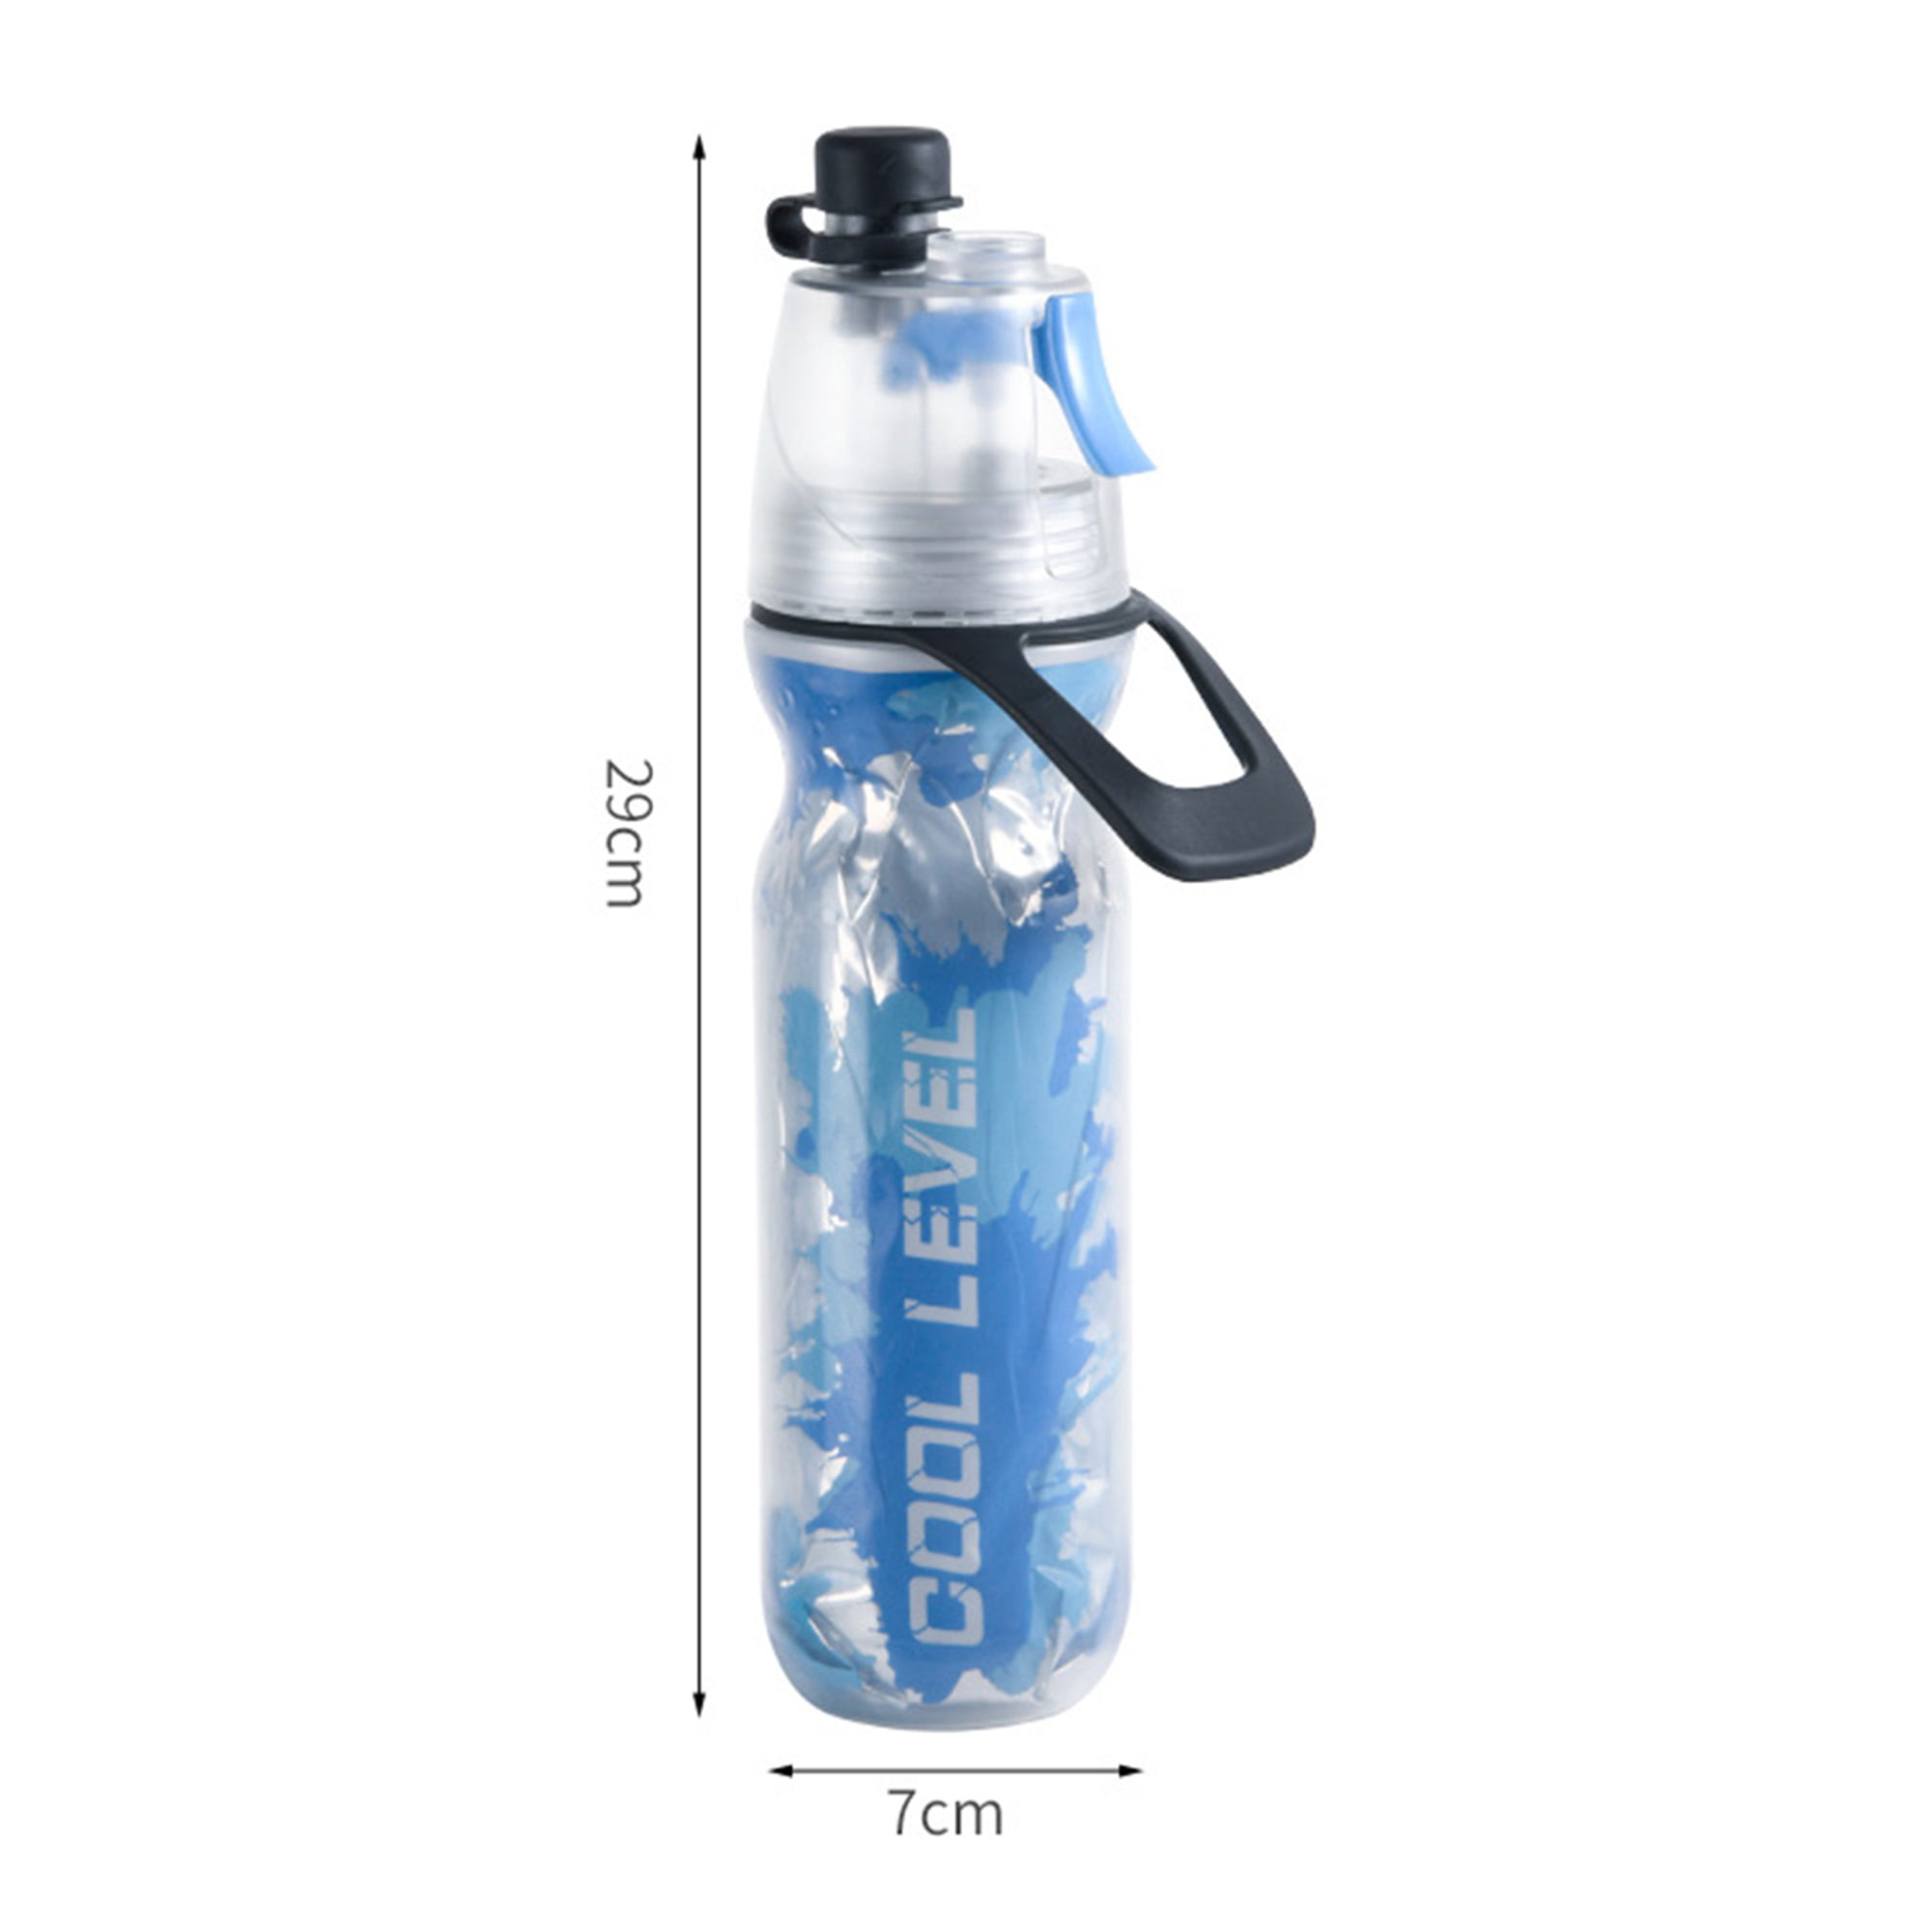 TOPBIGGER 2 in1 Mist Water Bottles BPA Free Leak Proof Sports Bottle Misting Bottle Spray Sports Water Bottle 20 oz 